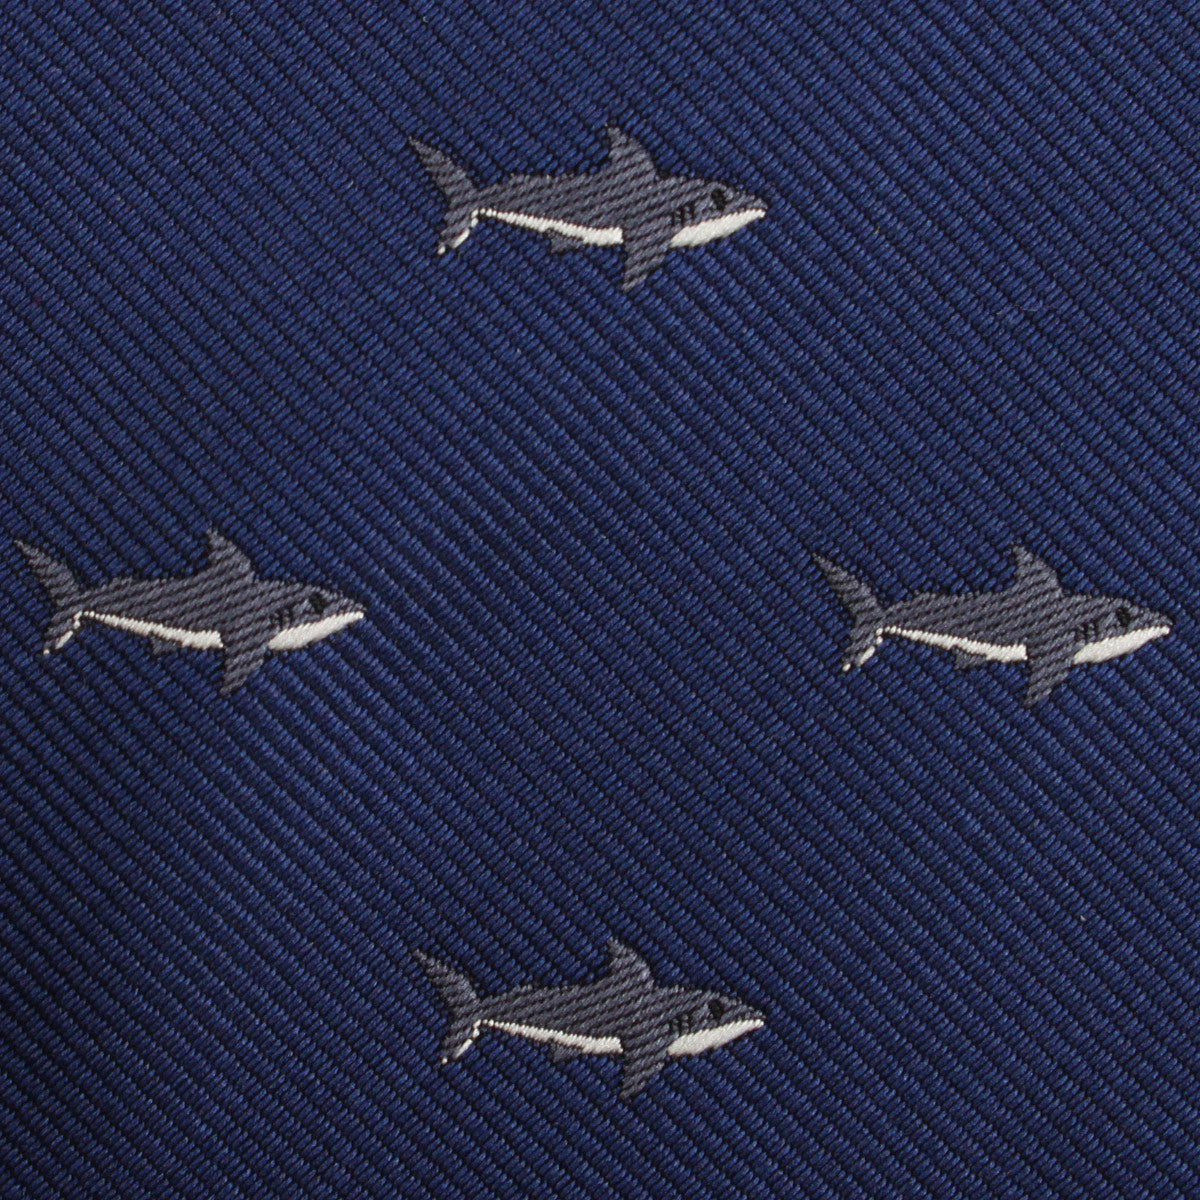 Shark Fabric Necktie